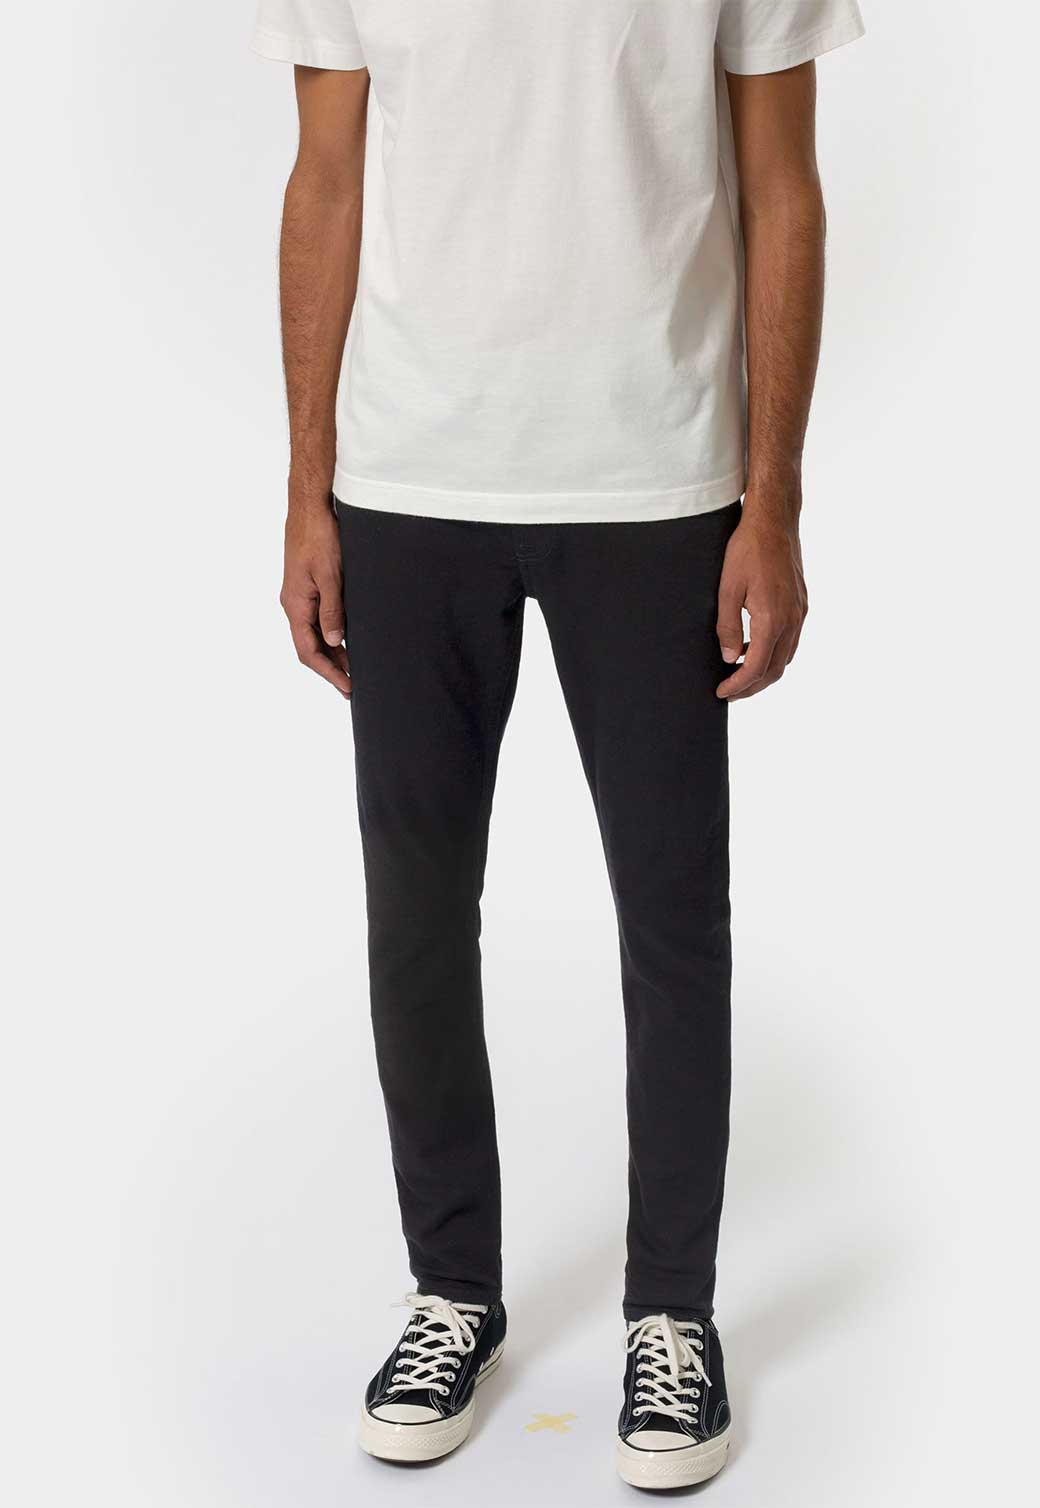 Lavender ג'ינס ארוך לגברים Skinny Lin - Black Black NUDIE